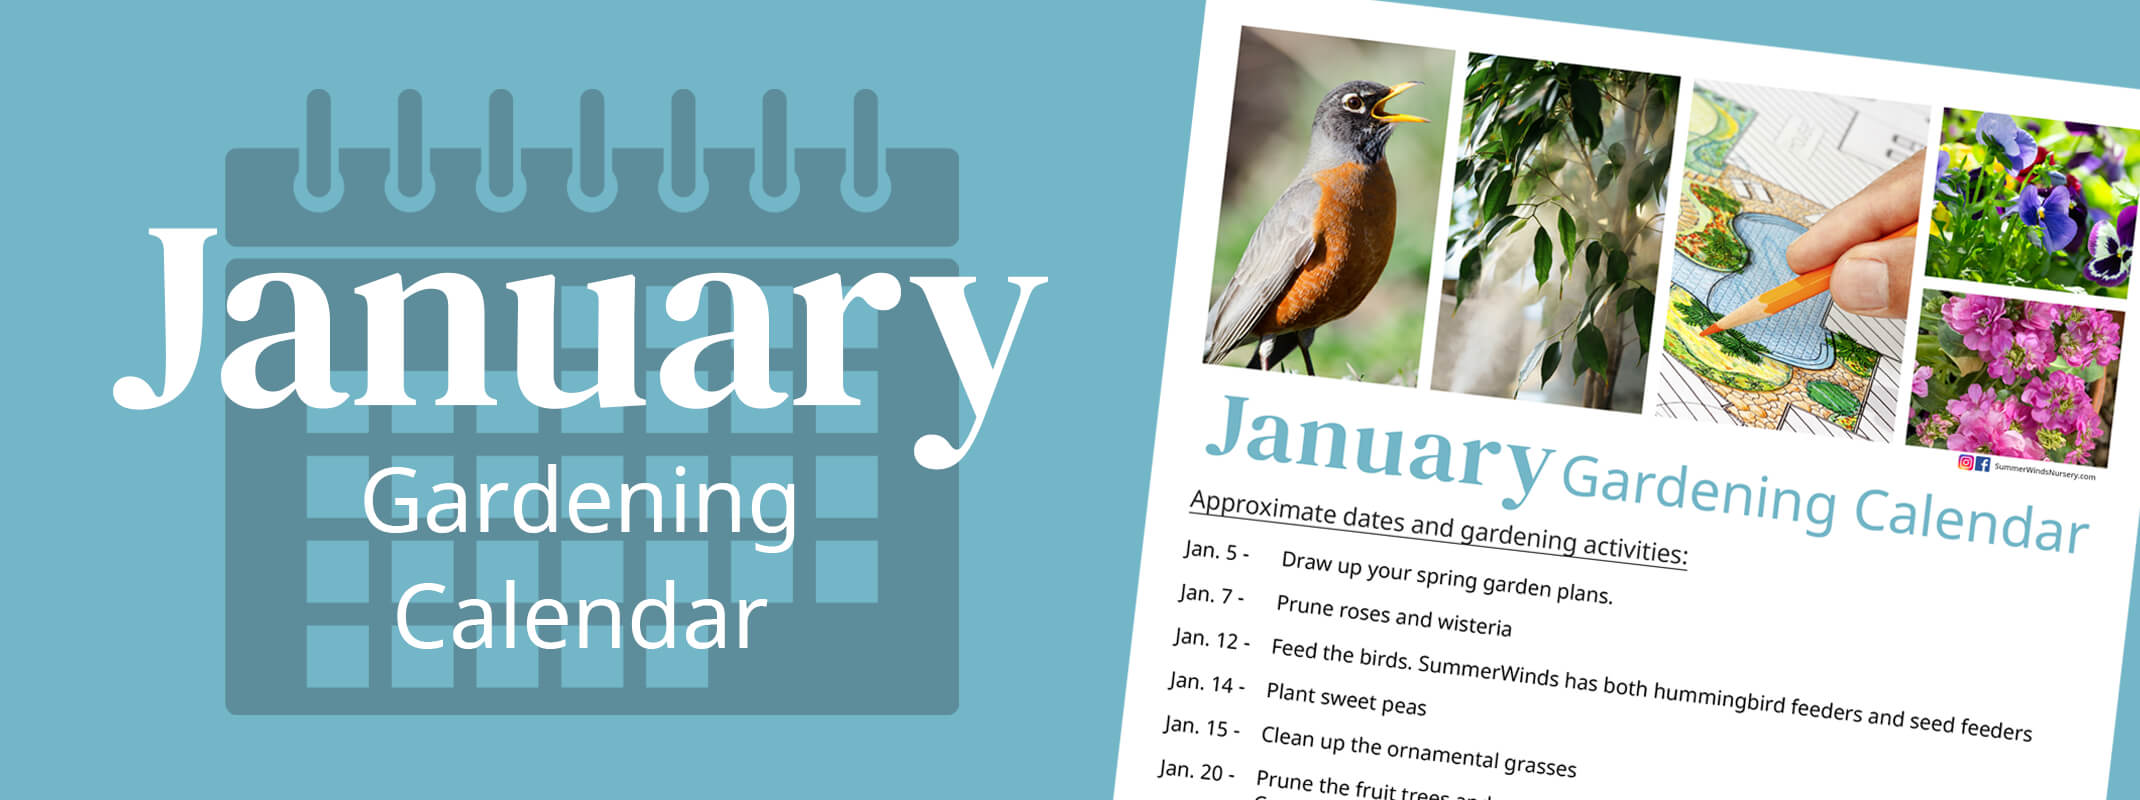 january gardening calendar monthly tips banner